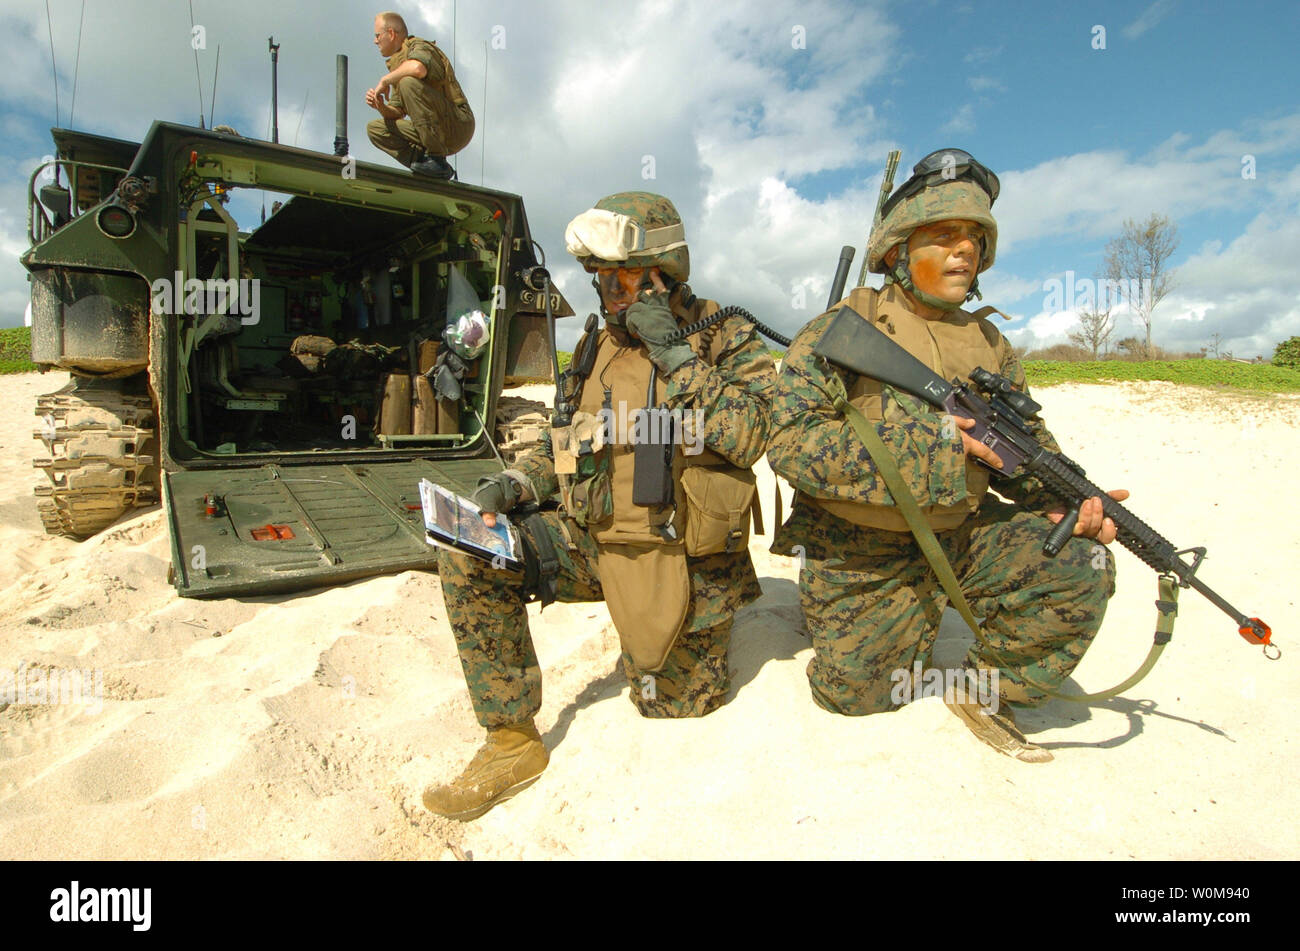 Le capitaine du Corps des Marines américain Jon Curtis (à gauche) les appels dans une frappe aérienne que le Cpl. Eric Brookes fournit la sécurité dans le cadre d'une simulation d'agression sur la plage de La Baie de Kaneohe Marine Corps Base, Texas, le 18 juillet 2006, au cours de l'exercice Rim of the Pacific 2006. L'exercice, communément appelé l'exercice RIMPAC 2008, réunit des forces militaires de l'Australie, le Canada, le Chili, le Pérou, le Japon, la République de Corée, le Royaume-Uni et les États-Unis dans l'exercice maritime biennal le plus important au monde. Curtis et Brookes sont joints à l'équipe d'appui-feu avec Echo Company, 1er Régiment de Marines. Photo UPI/Marcos Hernandez T./U.S Banque D'Images